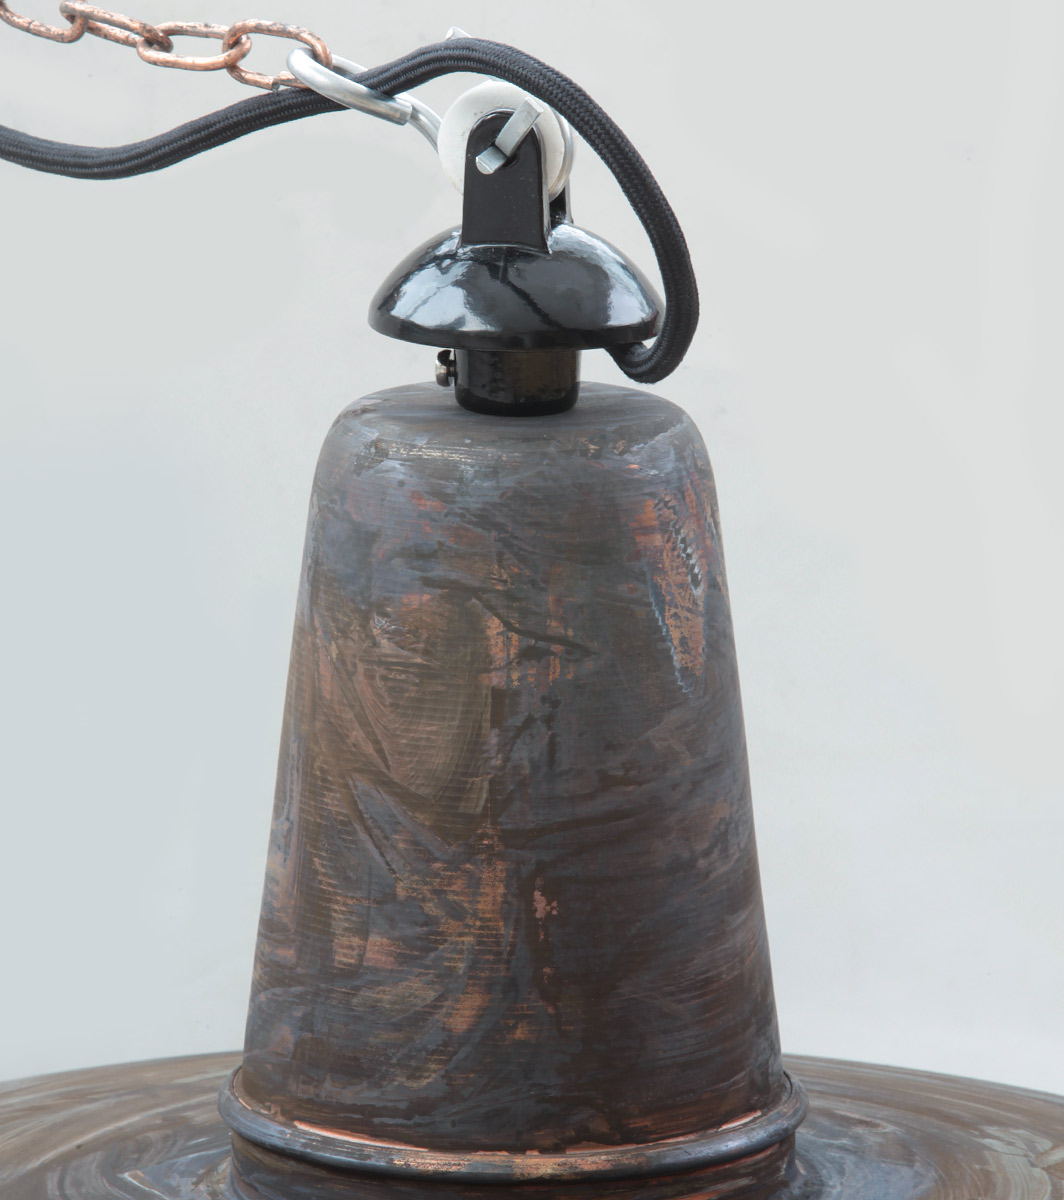 BERLIN Kupfer-Hängeleuchte im Industriedesign, Ø 25-60 cm: Kupfer patiniert mit Aluguss-Kettenaufhängung, Ø 600 mm